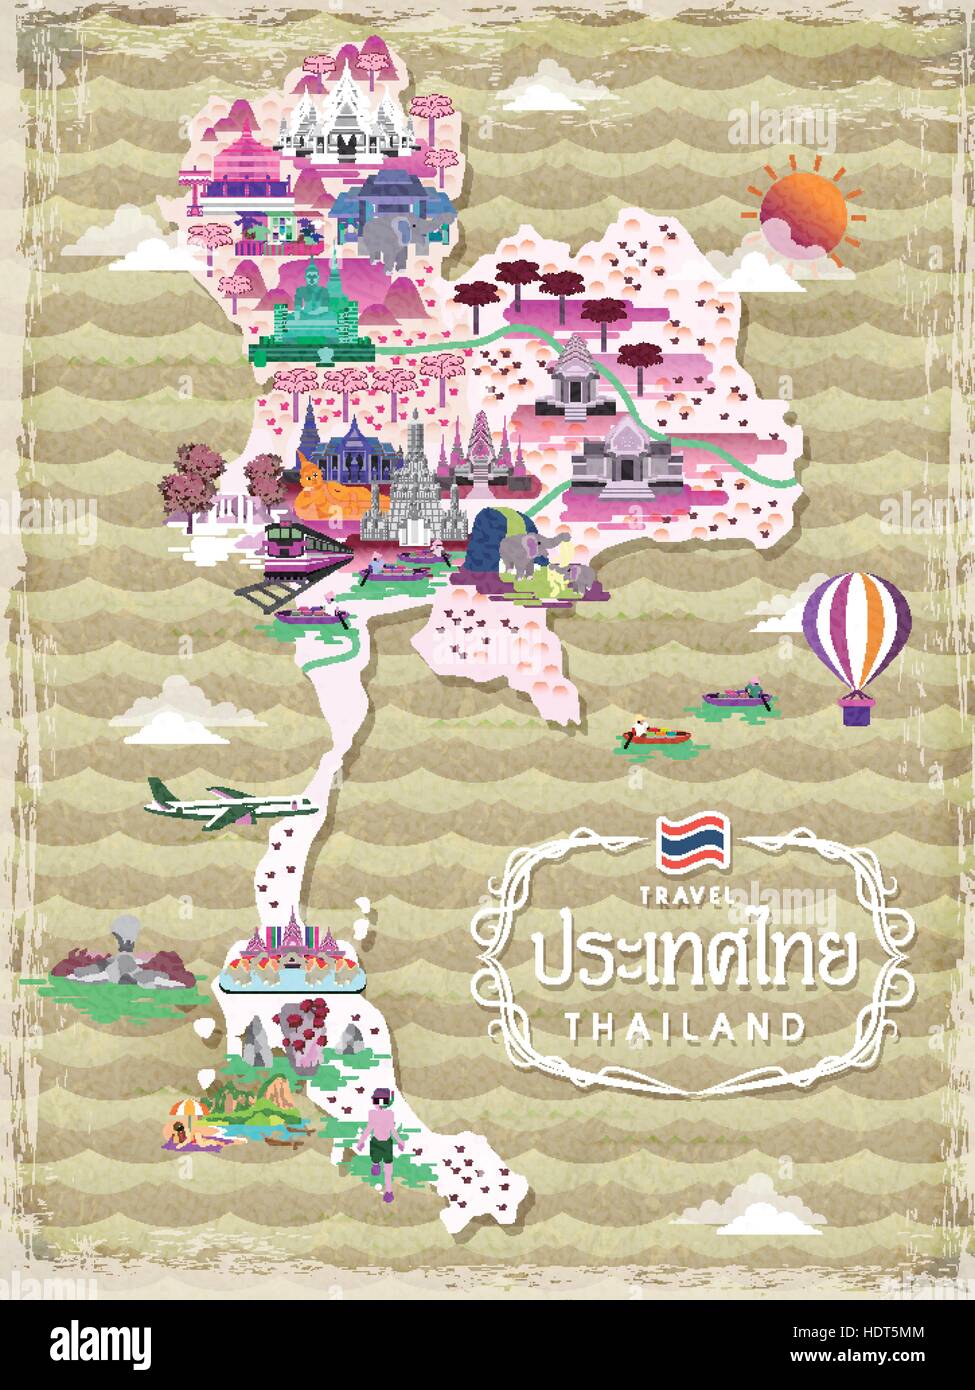 Belle carte de voyage Thaïlande - titre mot est Thaïlande pays nom en thaï Illustration de Vecteur